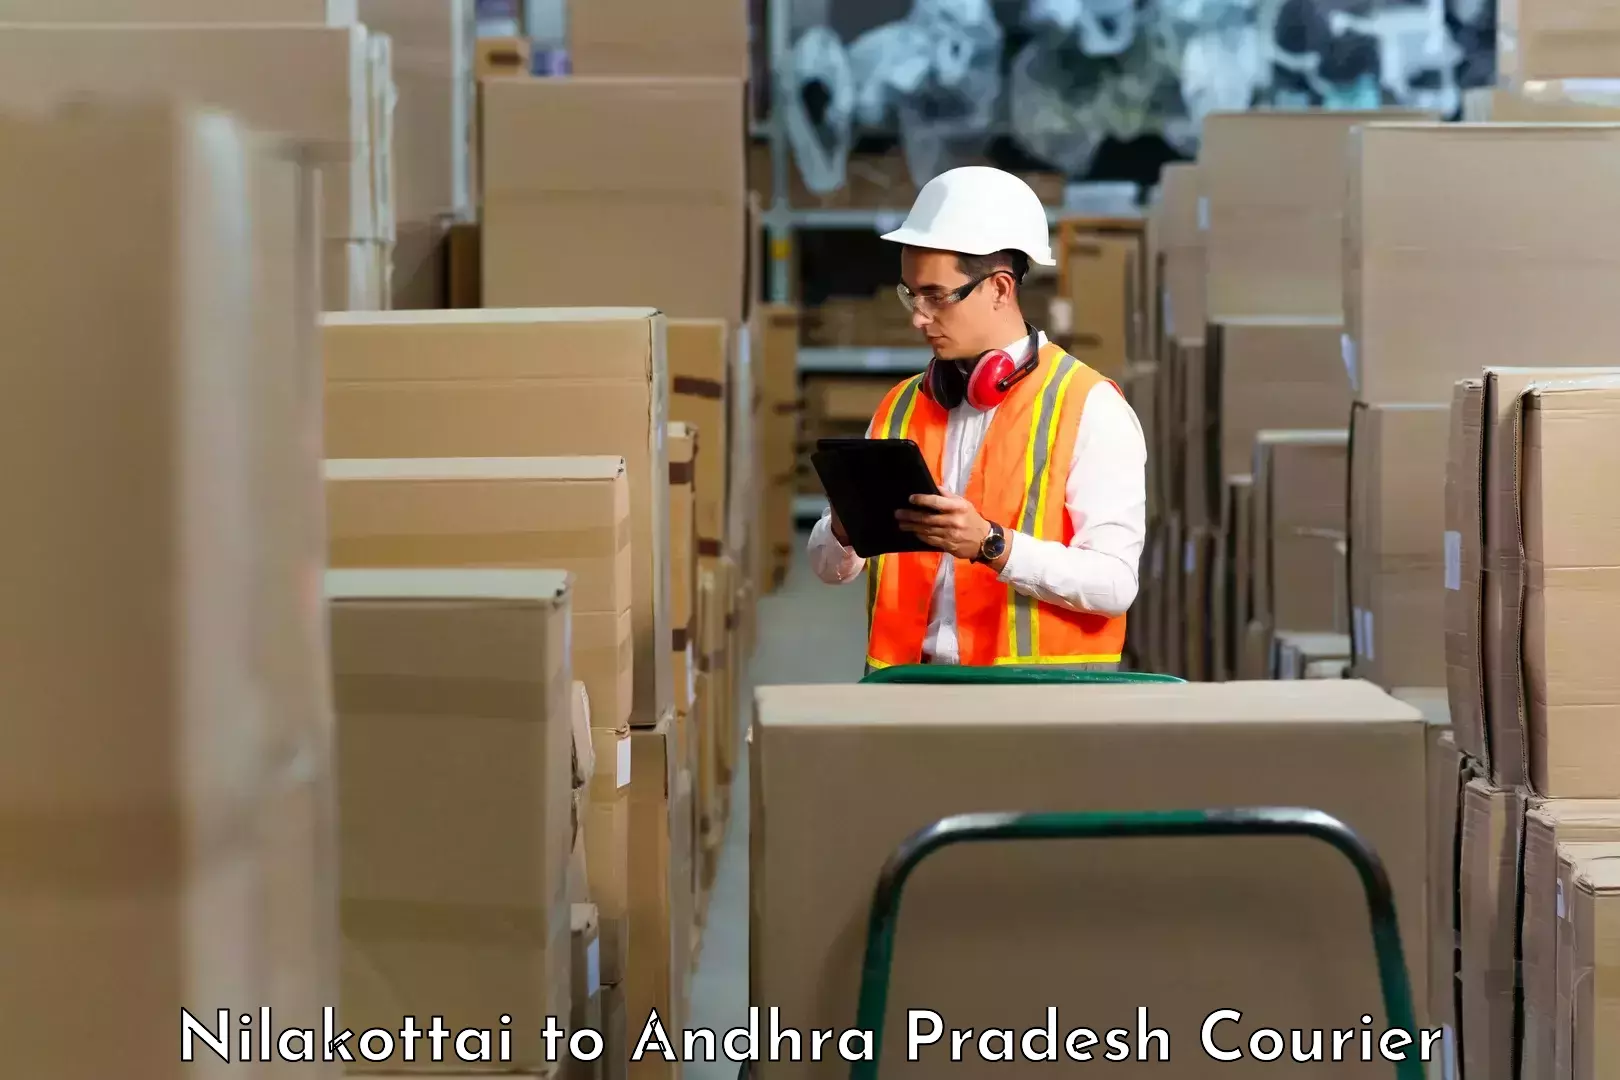 Reliable courier services in Nilakottai to Addanki